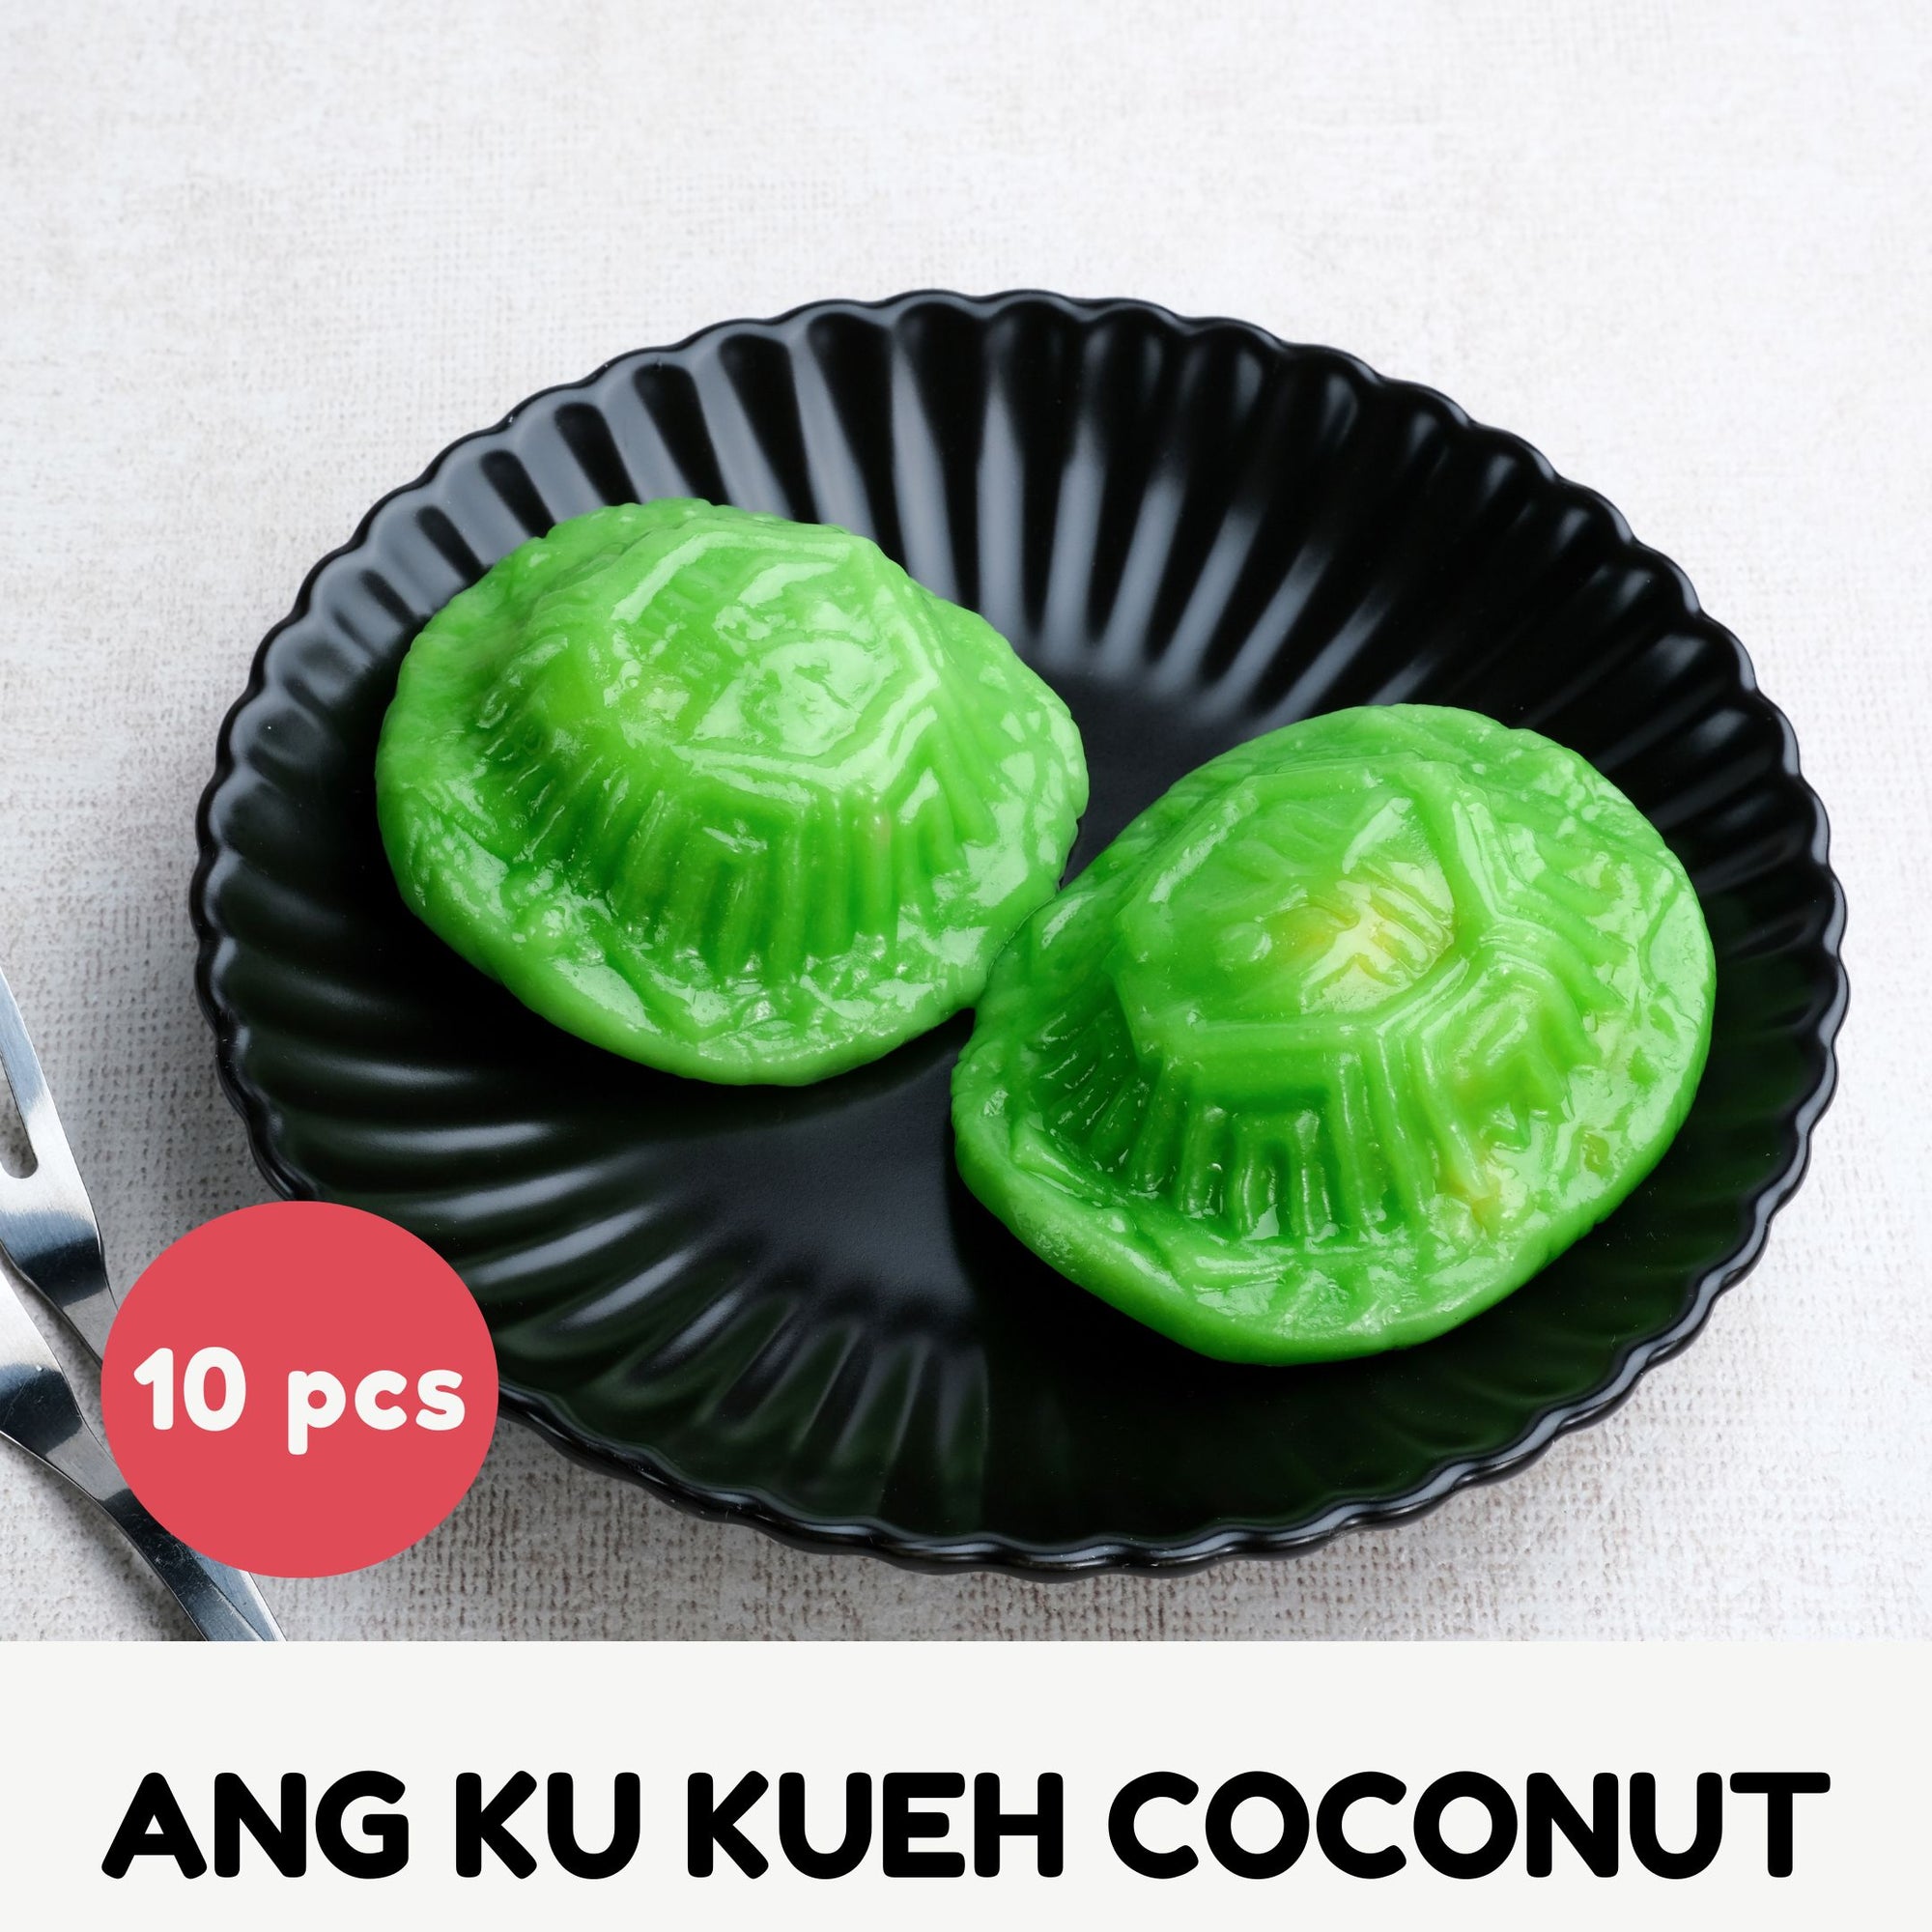 Ang Ku Kueh Coconut